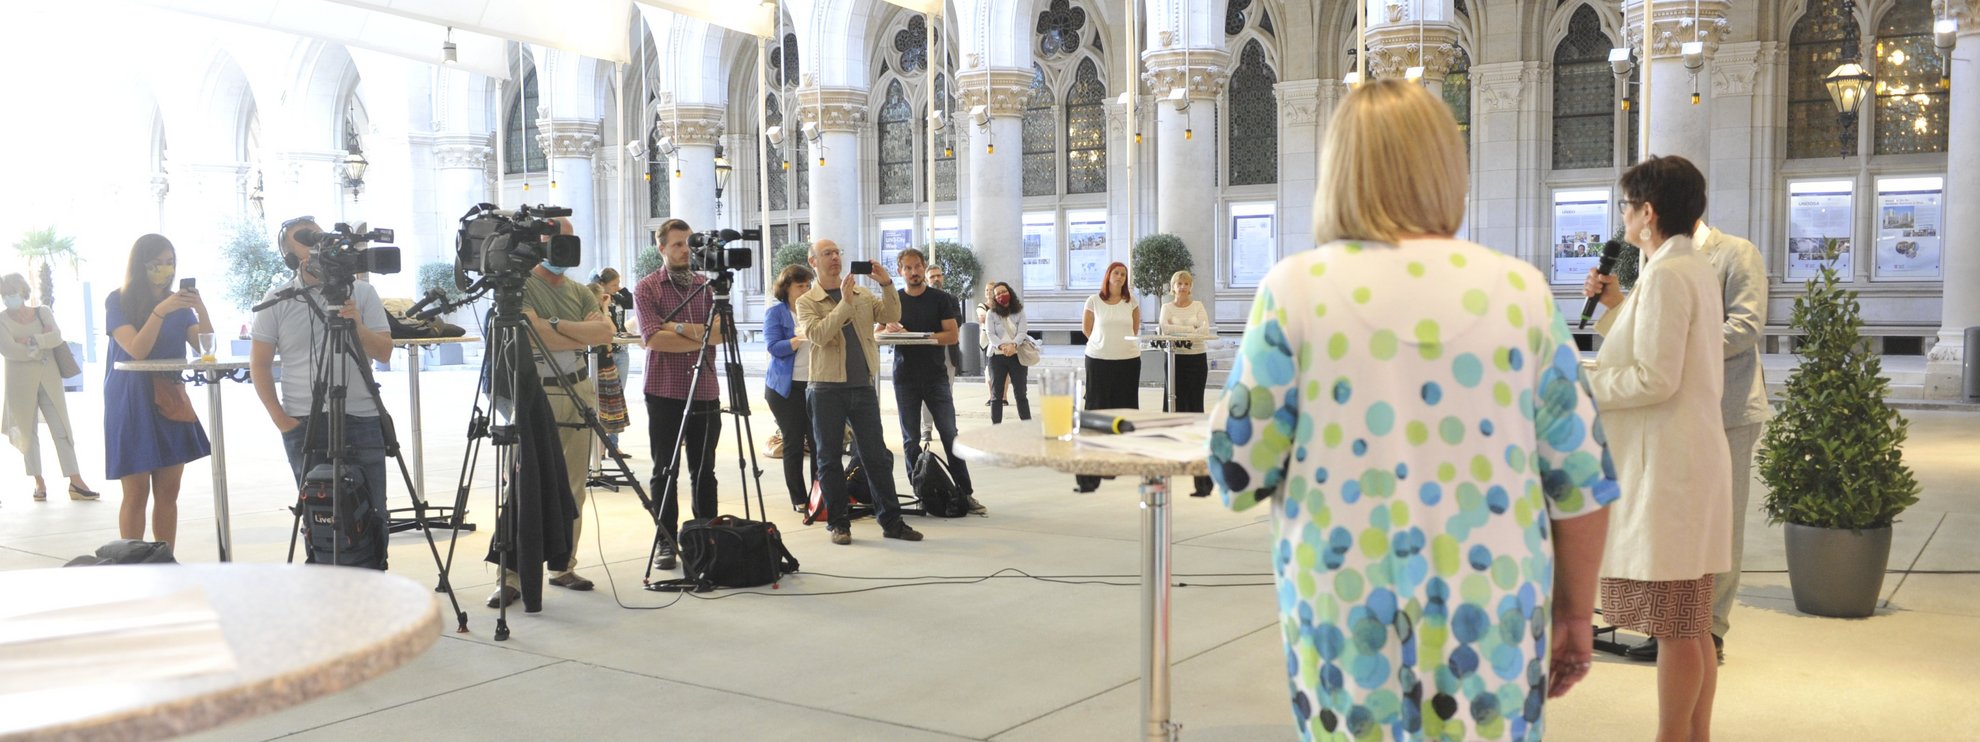 Pressekonferenz-Setting im Arkadenhof des Wiener Rathauses mit Diskutanten und vielen Kameras